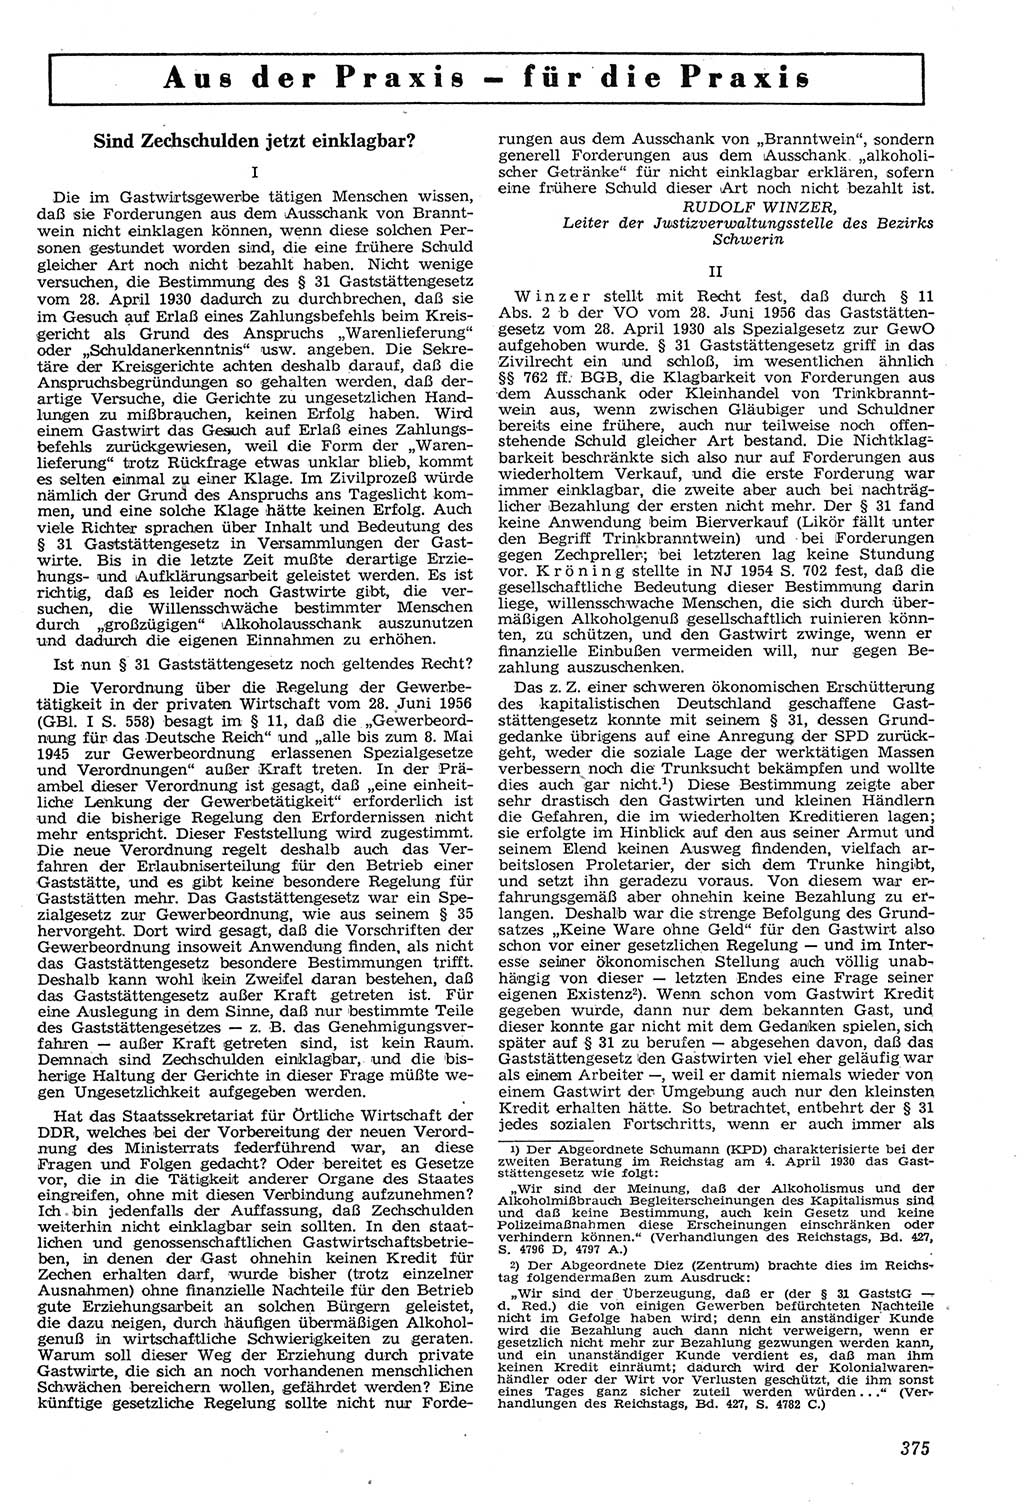 Neue Justiz (NJ), Zeitschrift für Recht und Rechtswissenschaft [Deutsche Demokratische Republik (DDR)], 11. Jahrgang 1957, Seite 375 (NJ DDR 1957, S. 375)